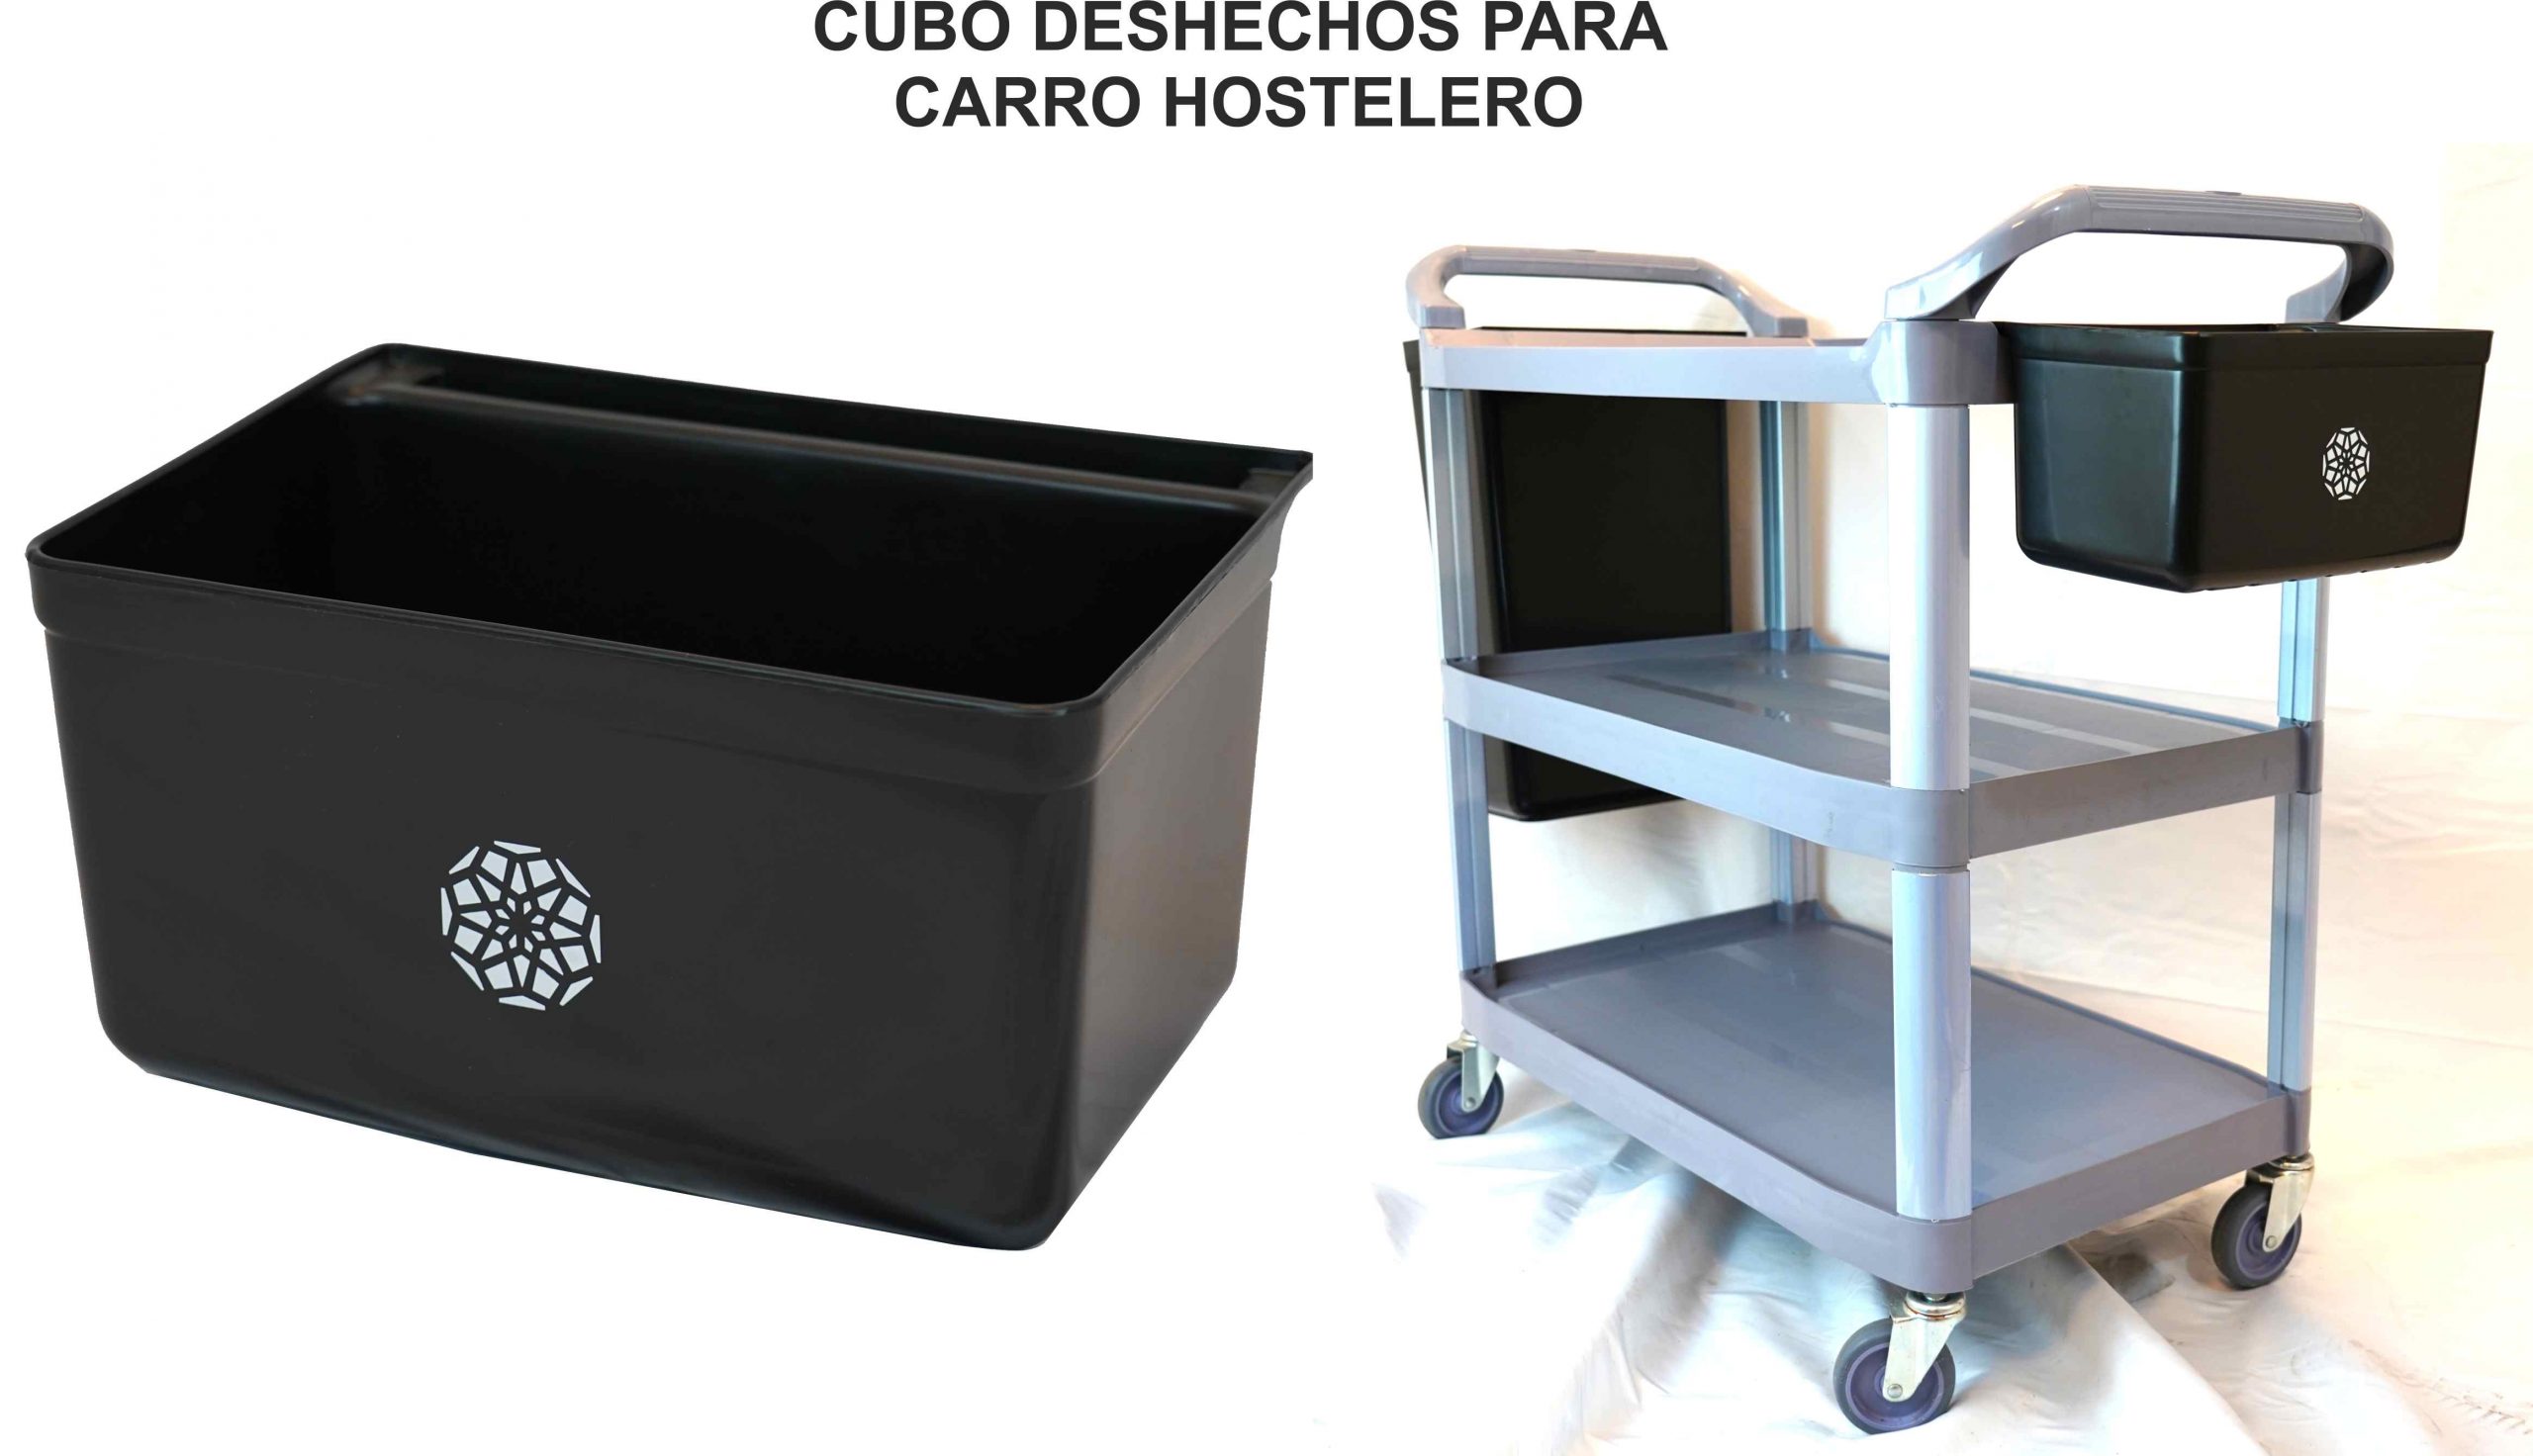 CUBO CUBIERTOS 33X23X17.5 PARA CARRO HOSTELERO